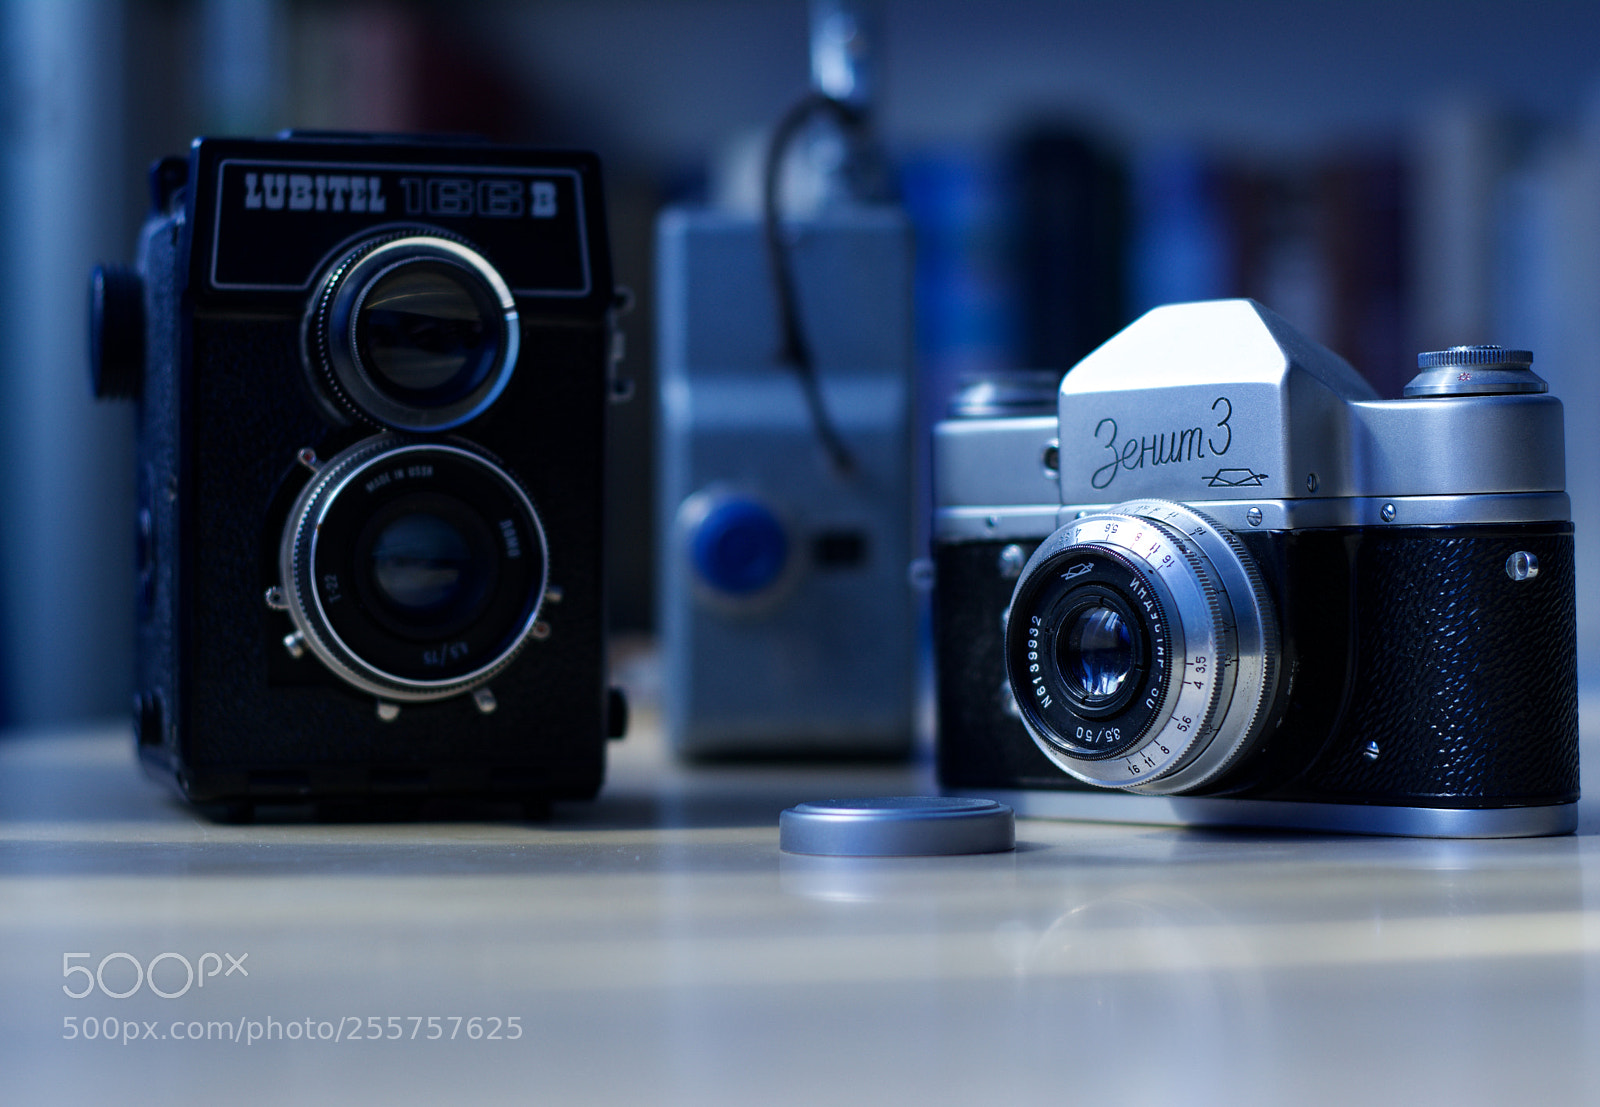 Nikon D7100 sample photo. Old filmcameras photography